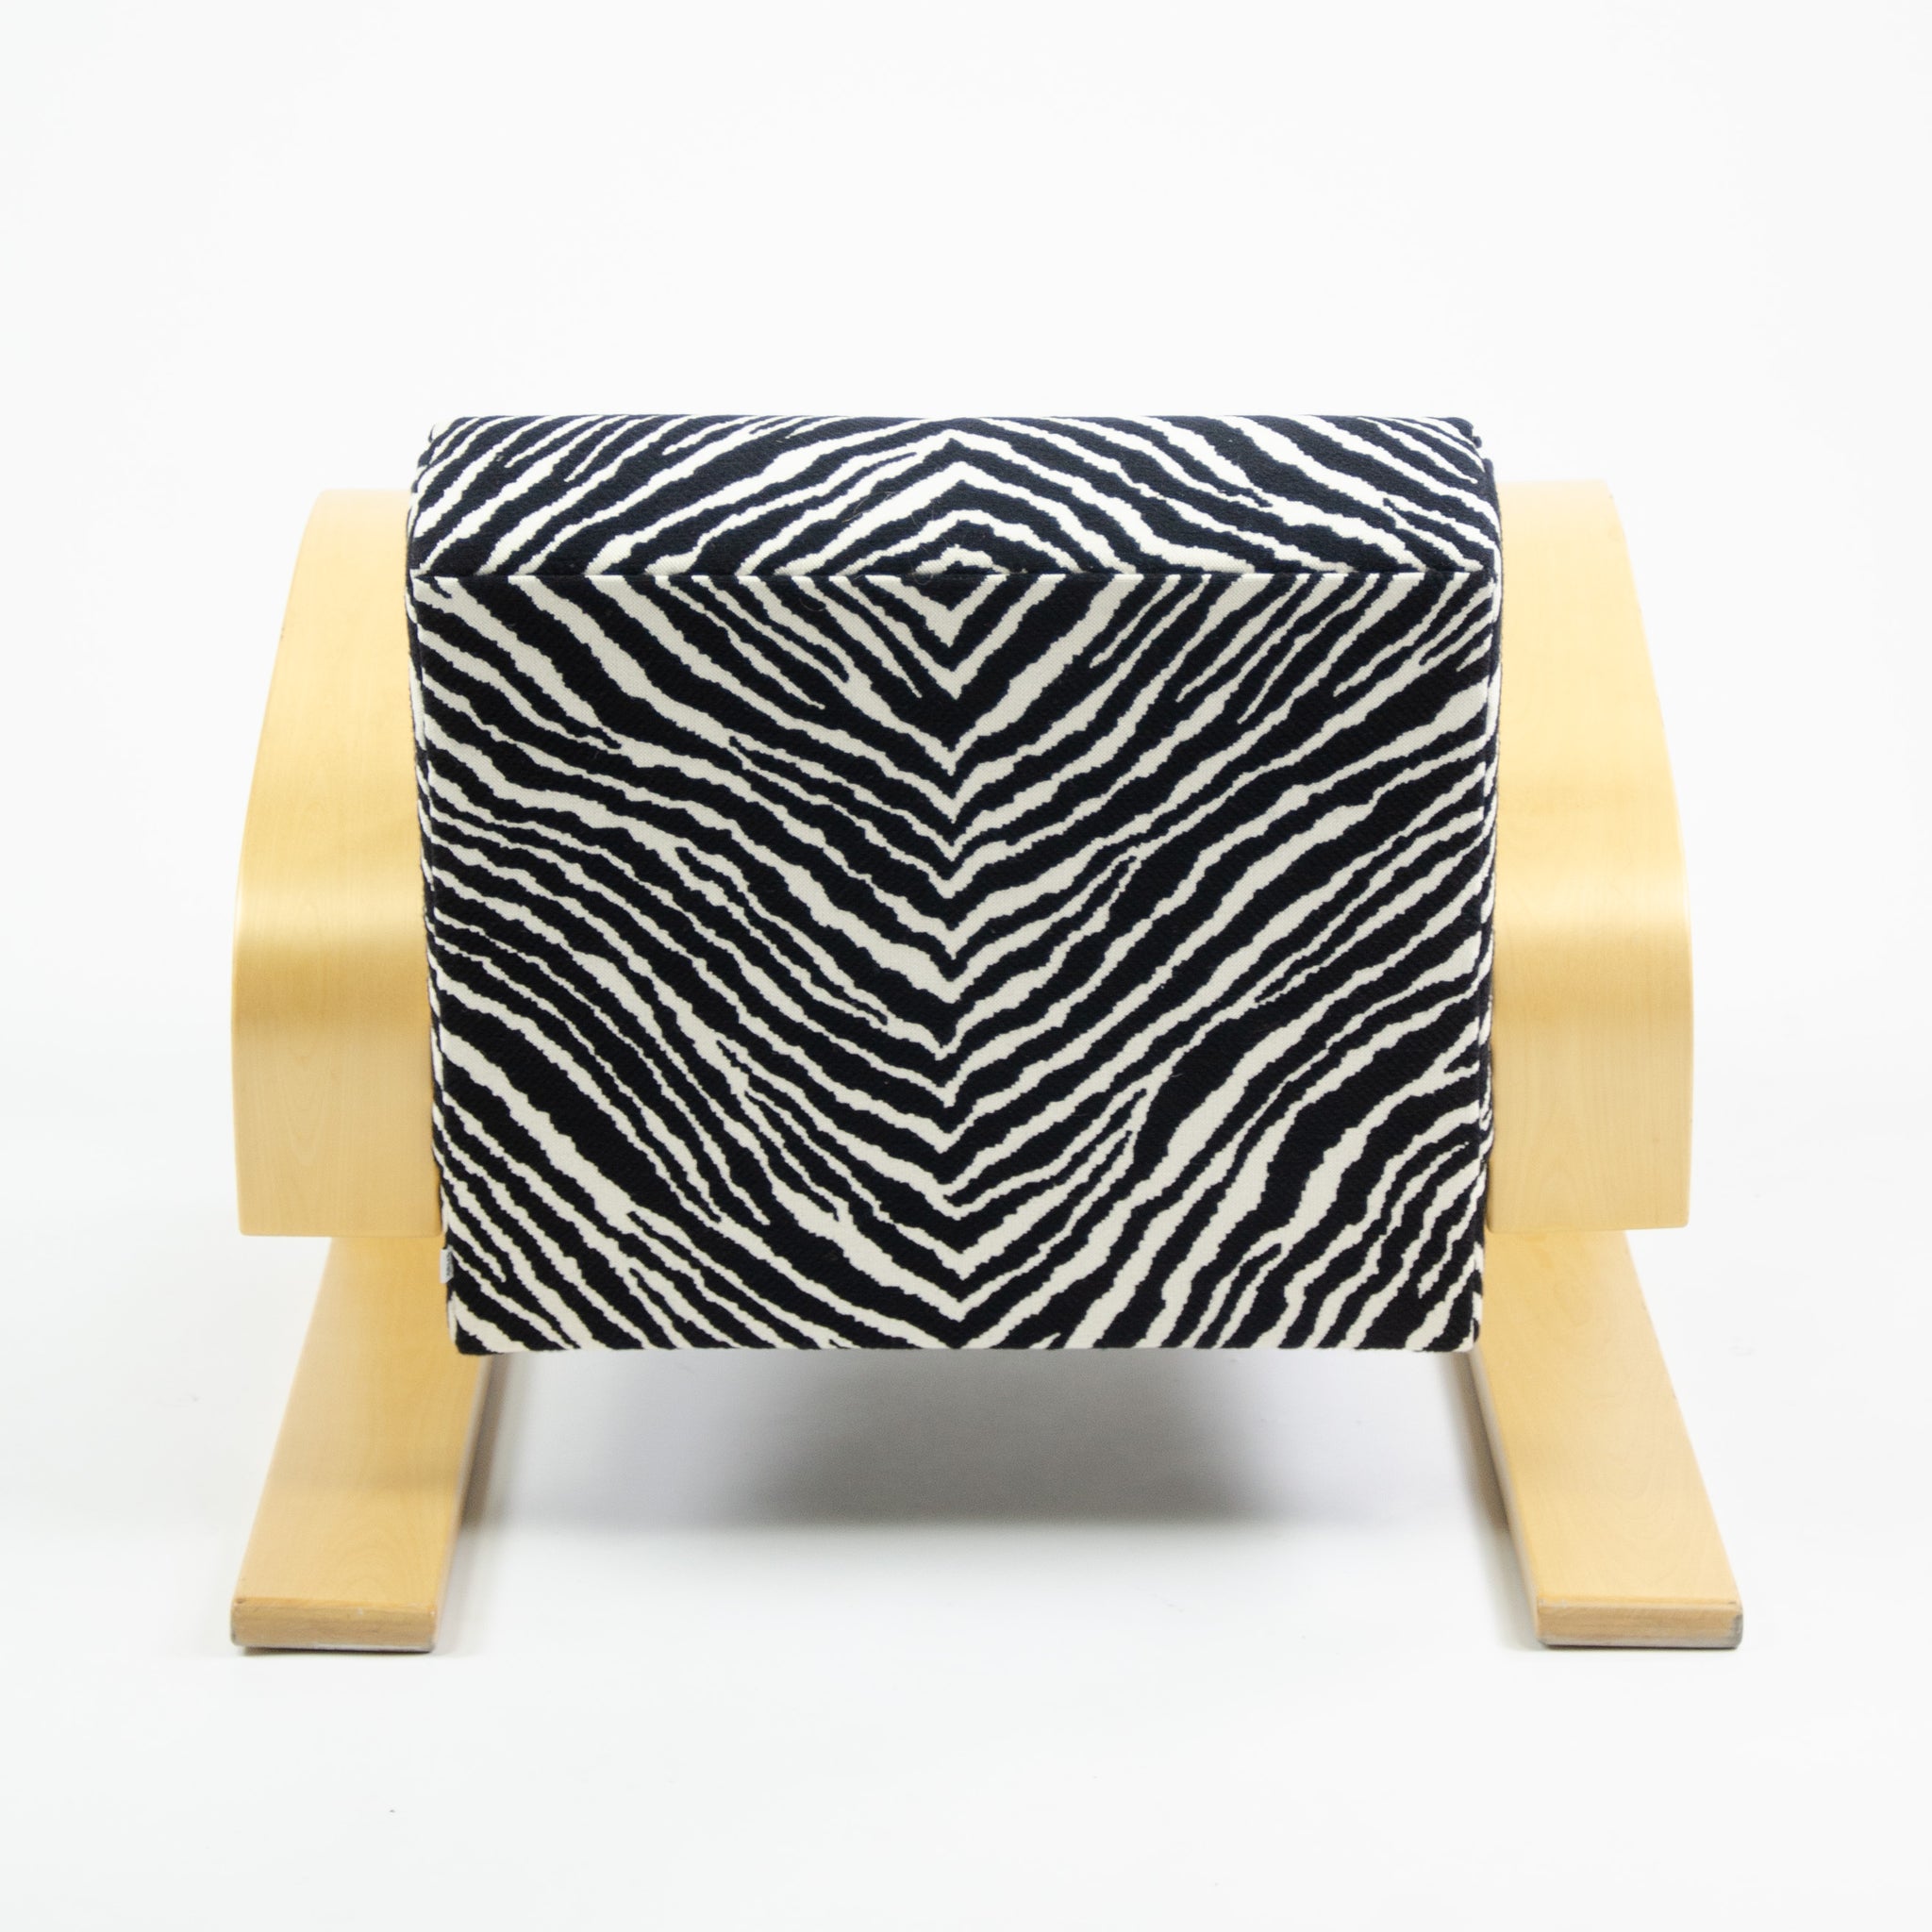 SOLD Artek Alvar Aalto 400 Tank Chair Zebra Upholstery 5x Available